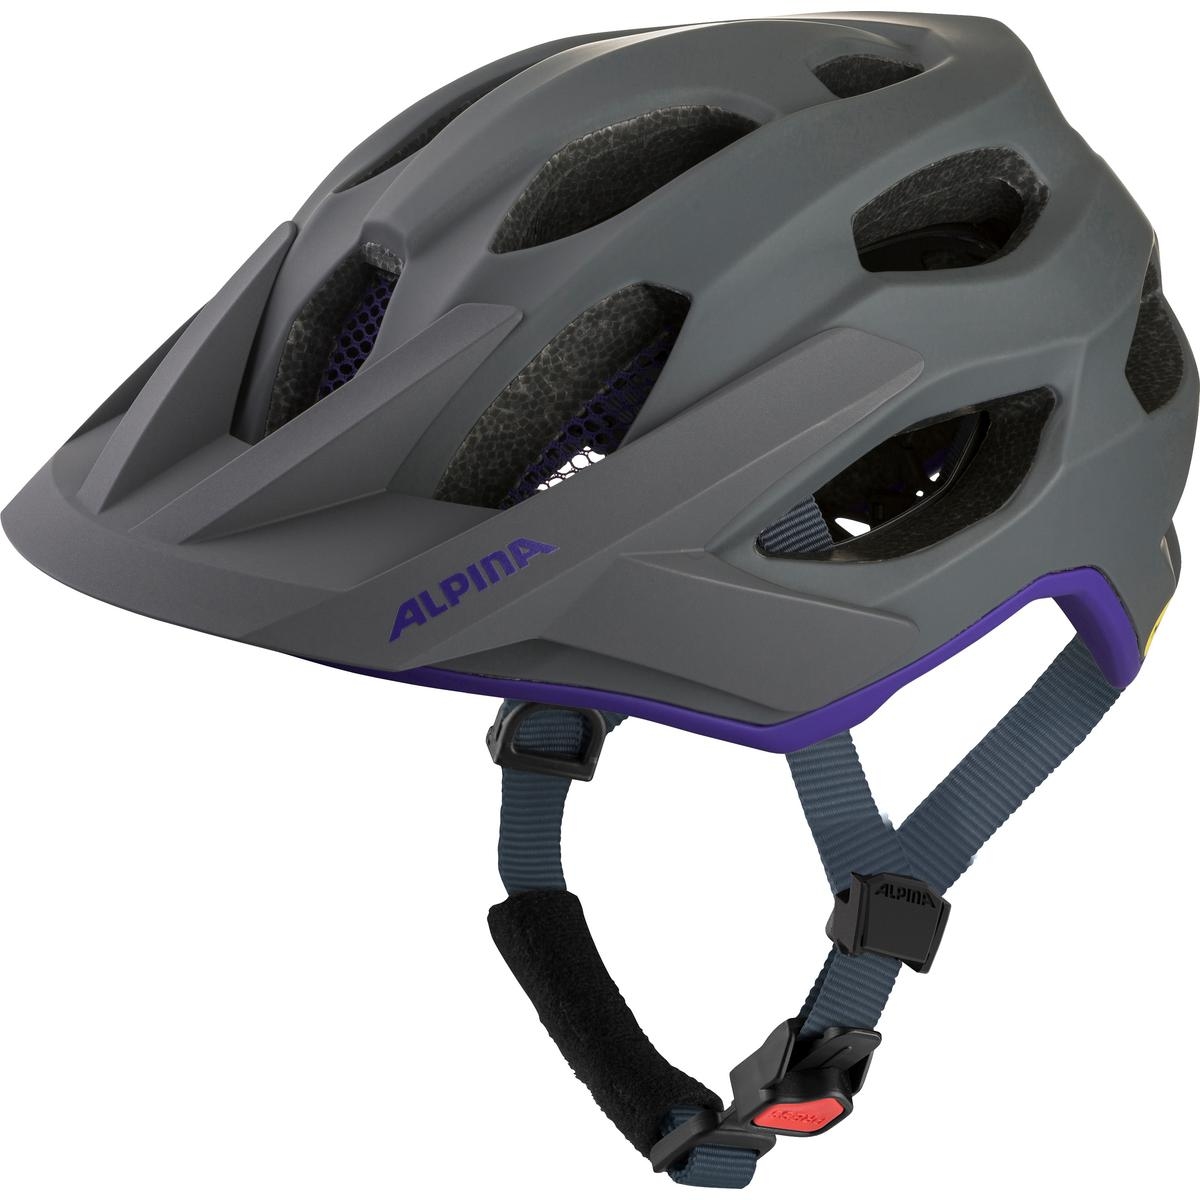 Produktbild von Alpina Apax MIPS Helm - midnight-grey purple matt